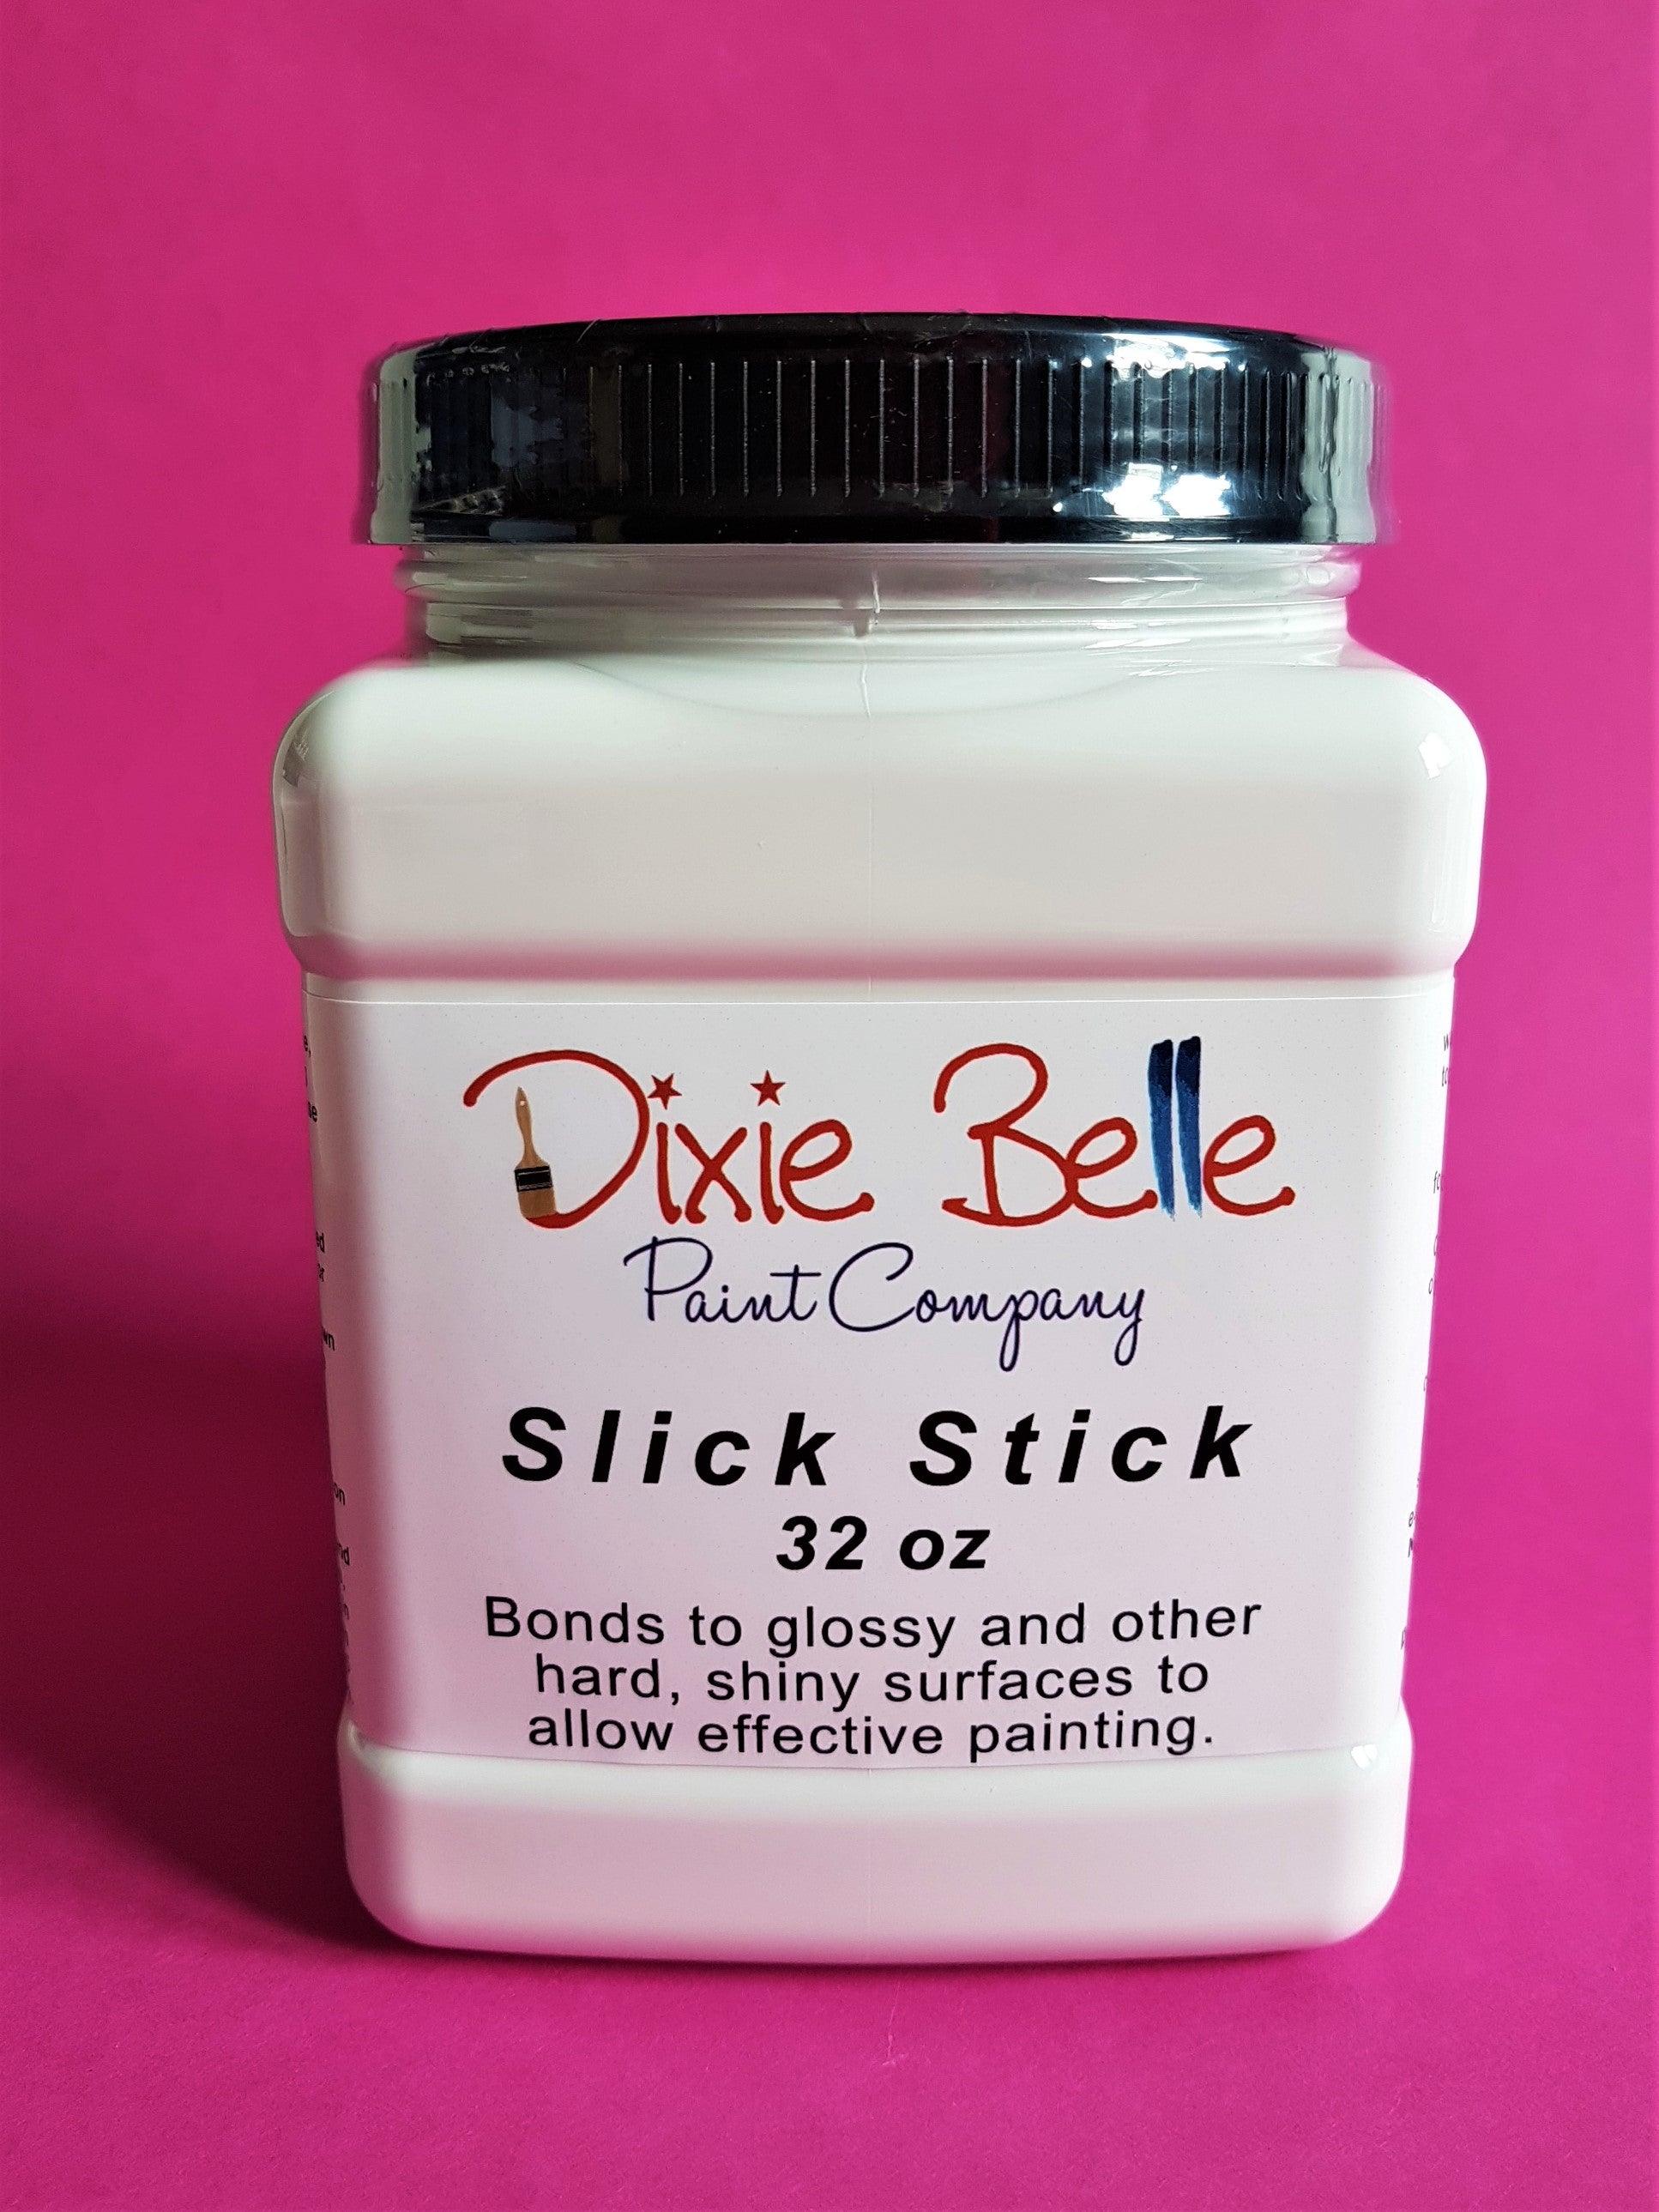 Dixie Belle Slick Stick Primer